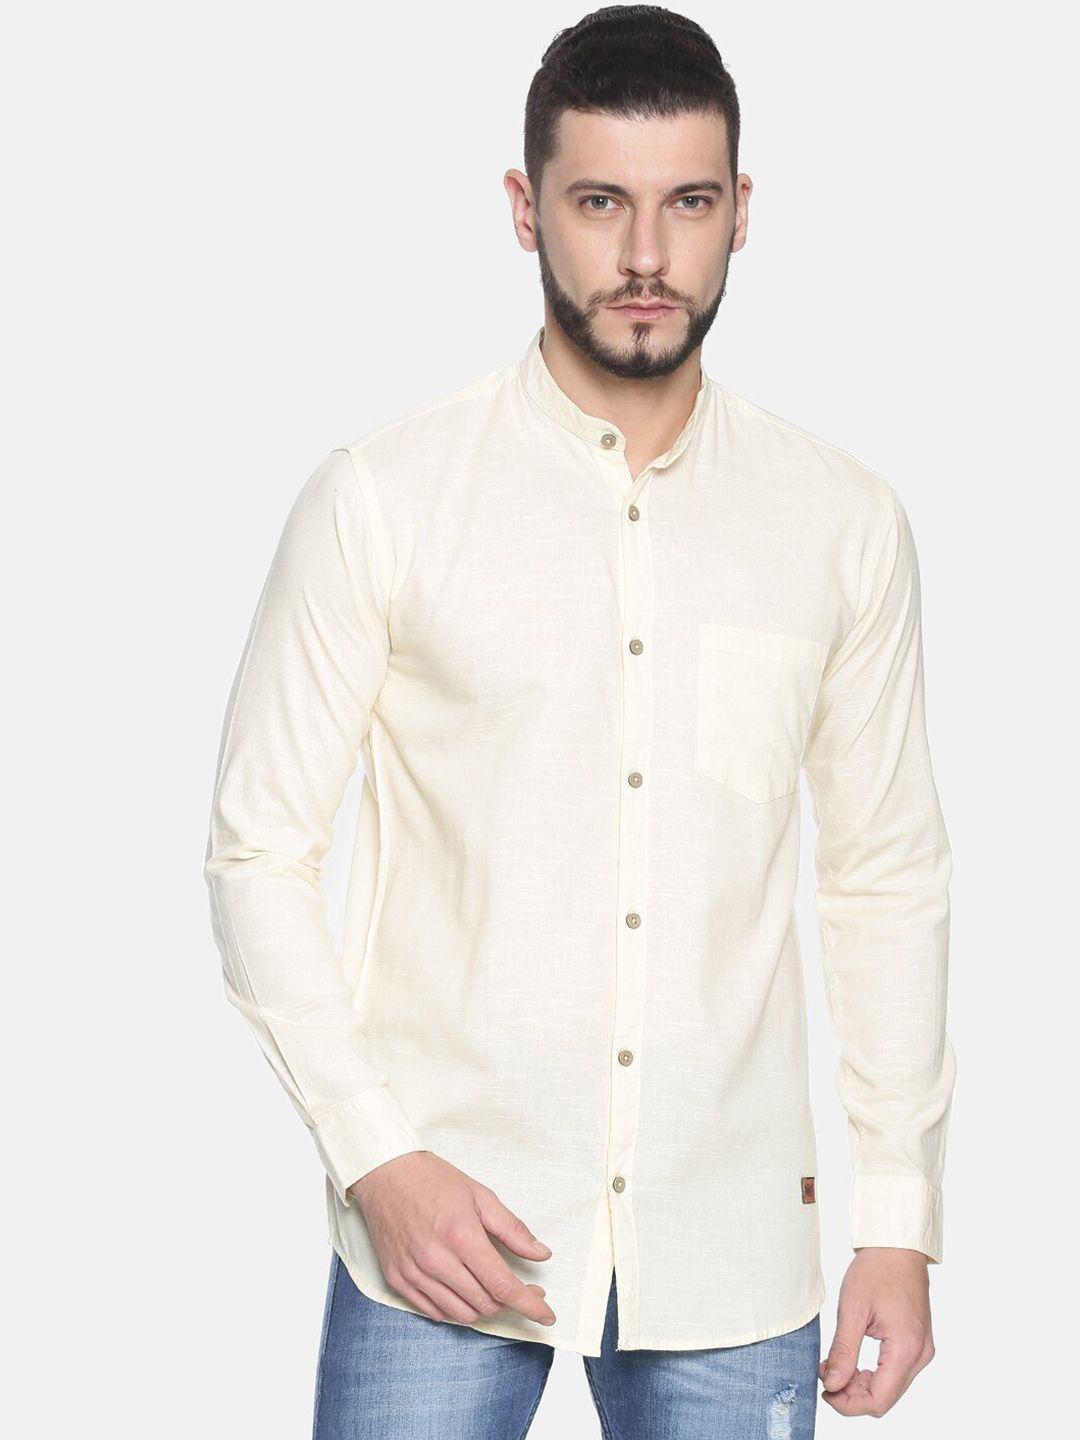 campus-sutra-men-cream-coloured-classic-regular-fit-solid-casual-shirt